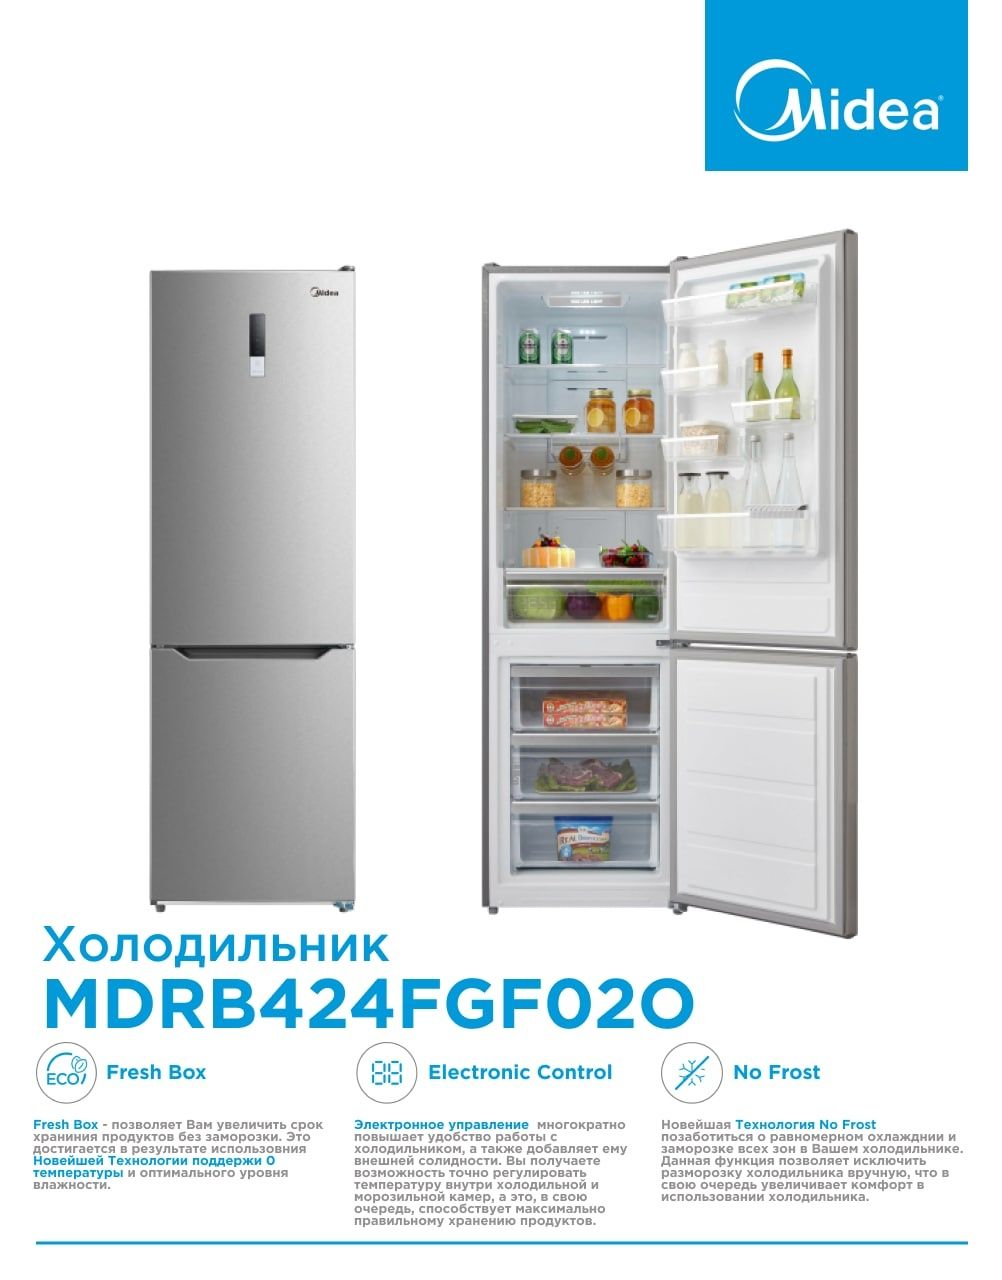 Электронное управление холодильниками